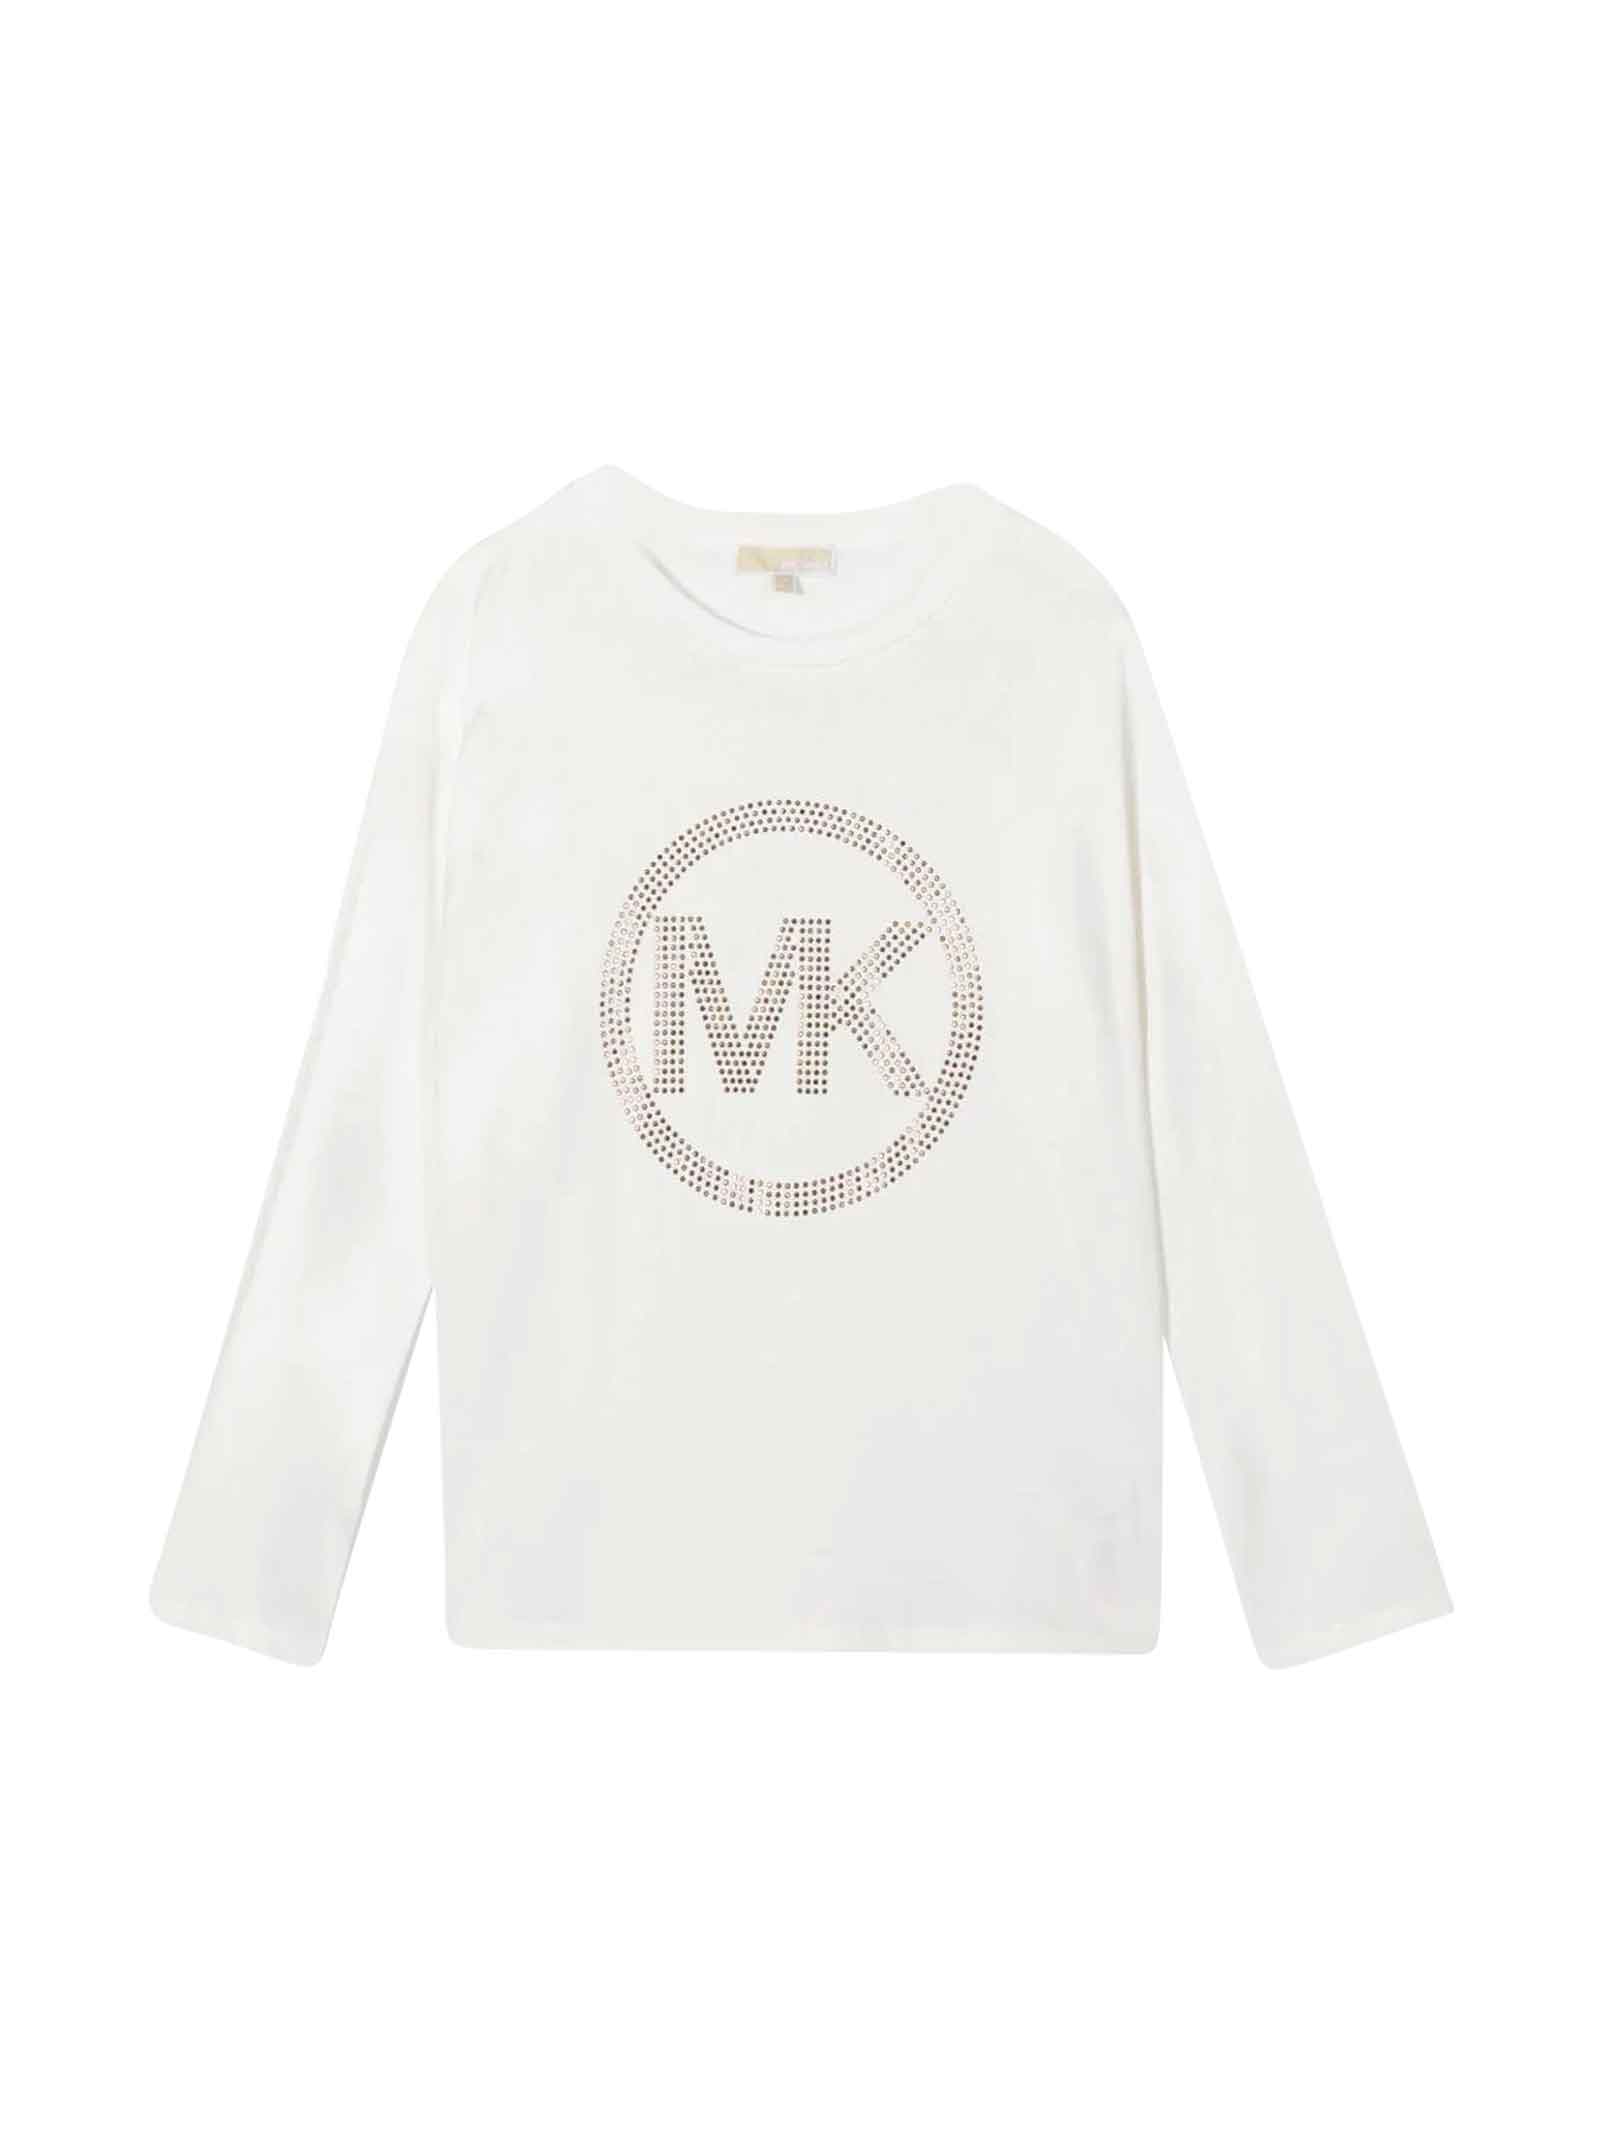 Michael Kors White T-shirt Teen Unisex